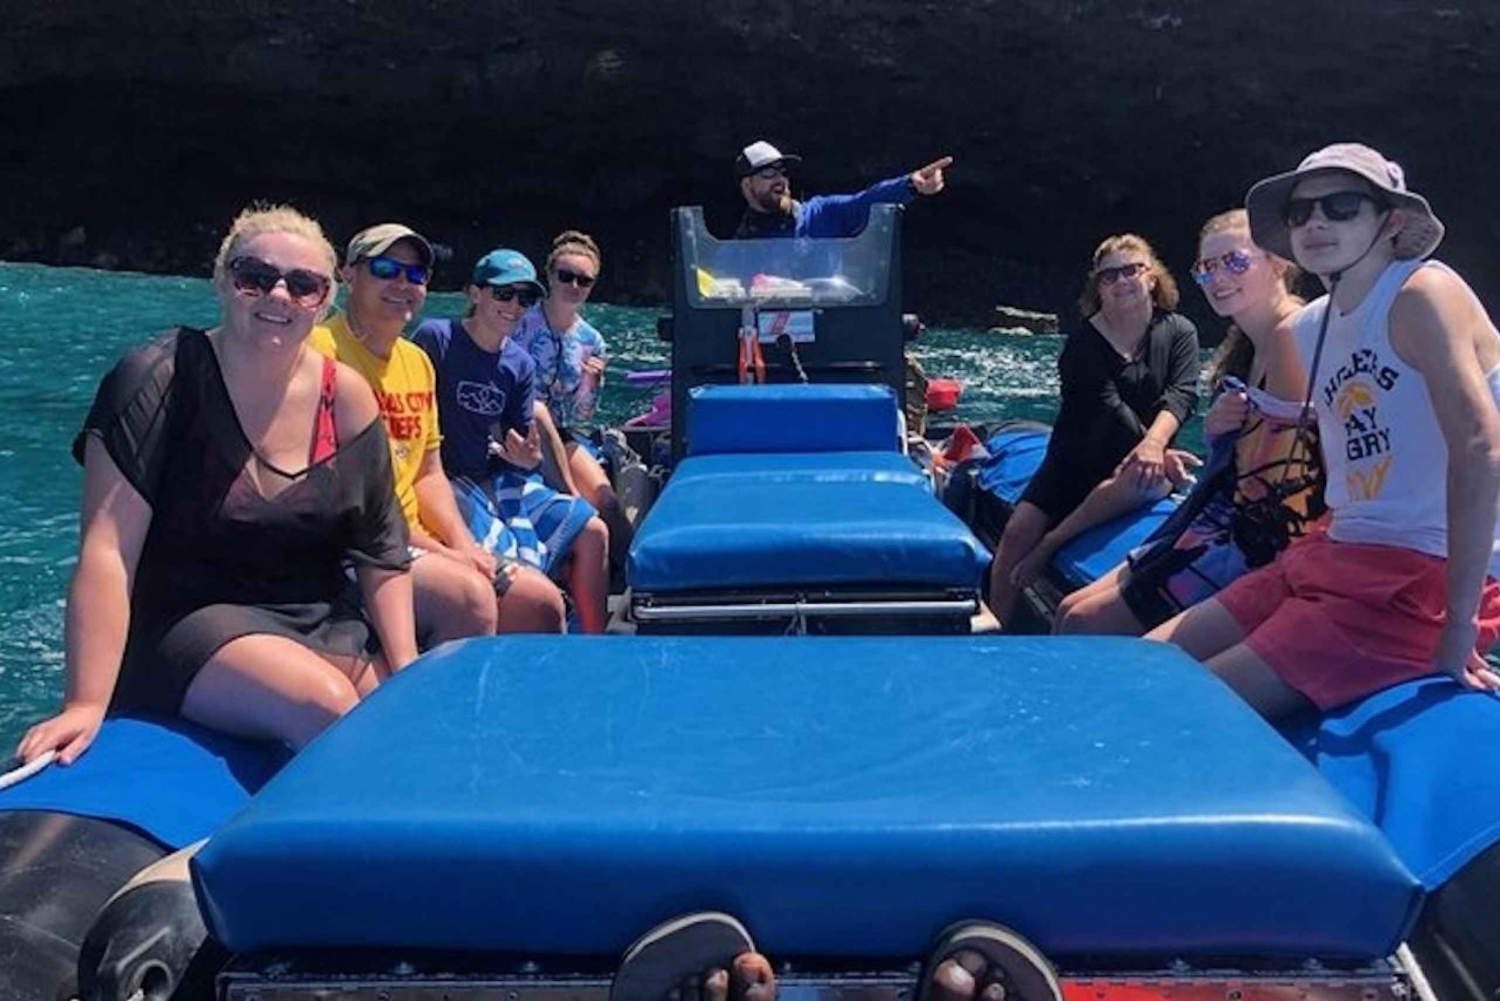 Hawai'i: Privat snorkeltur med frokost og drinks